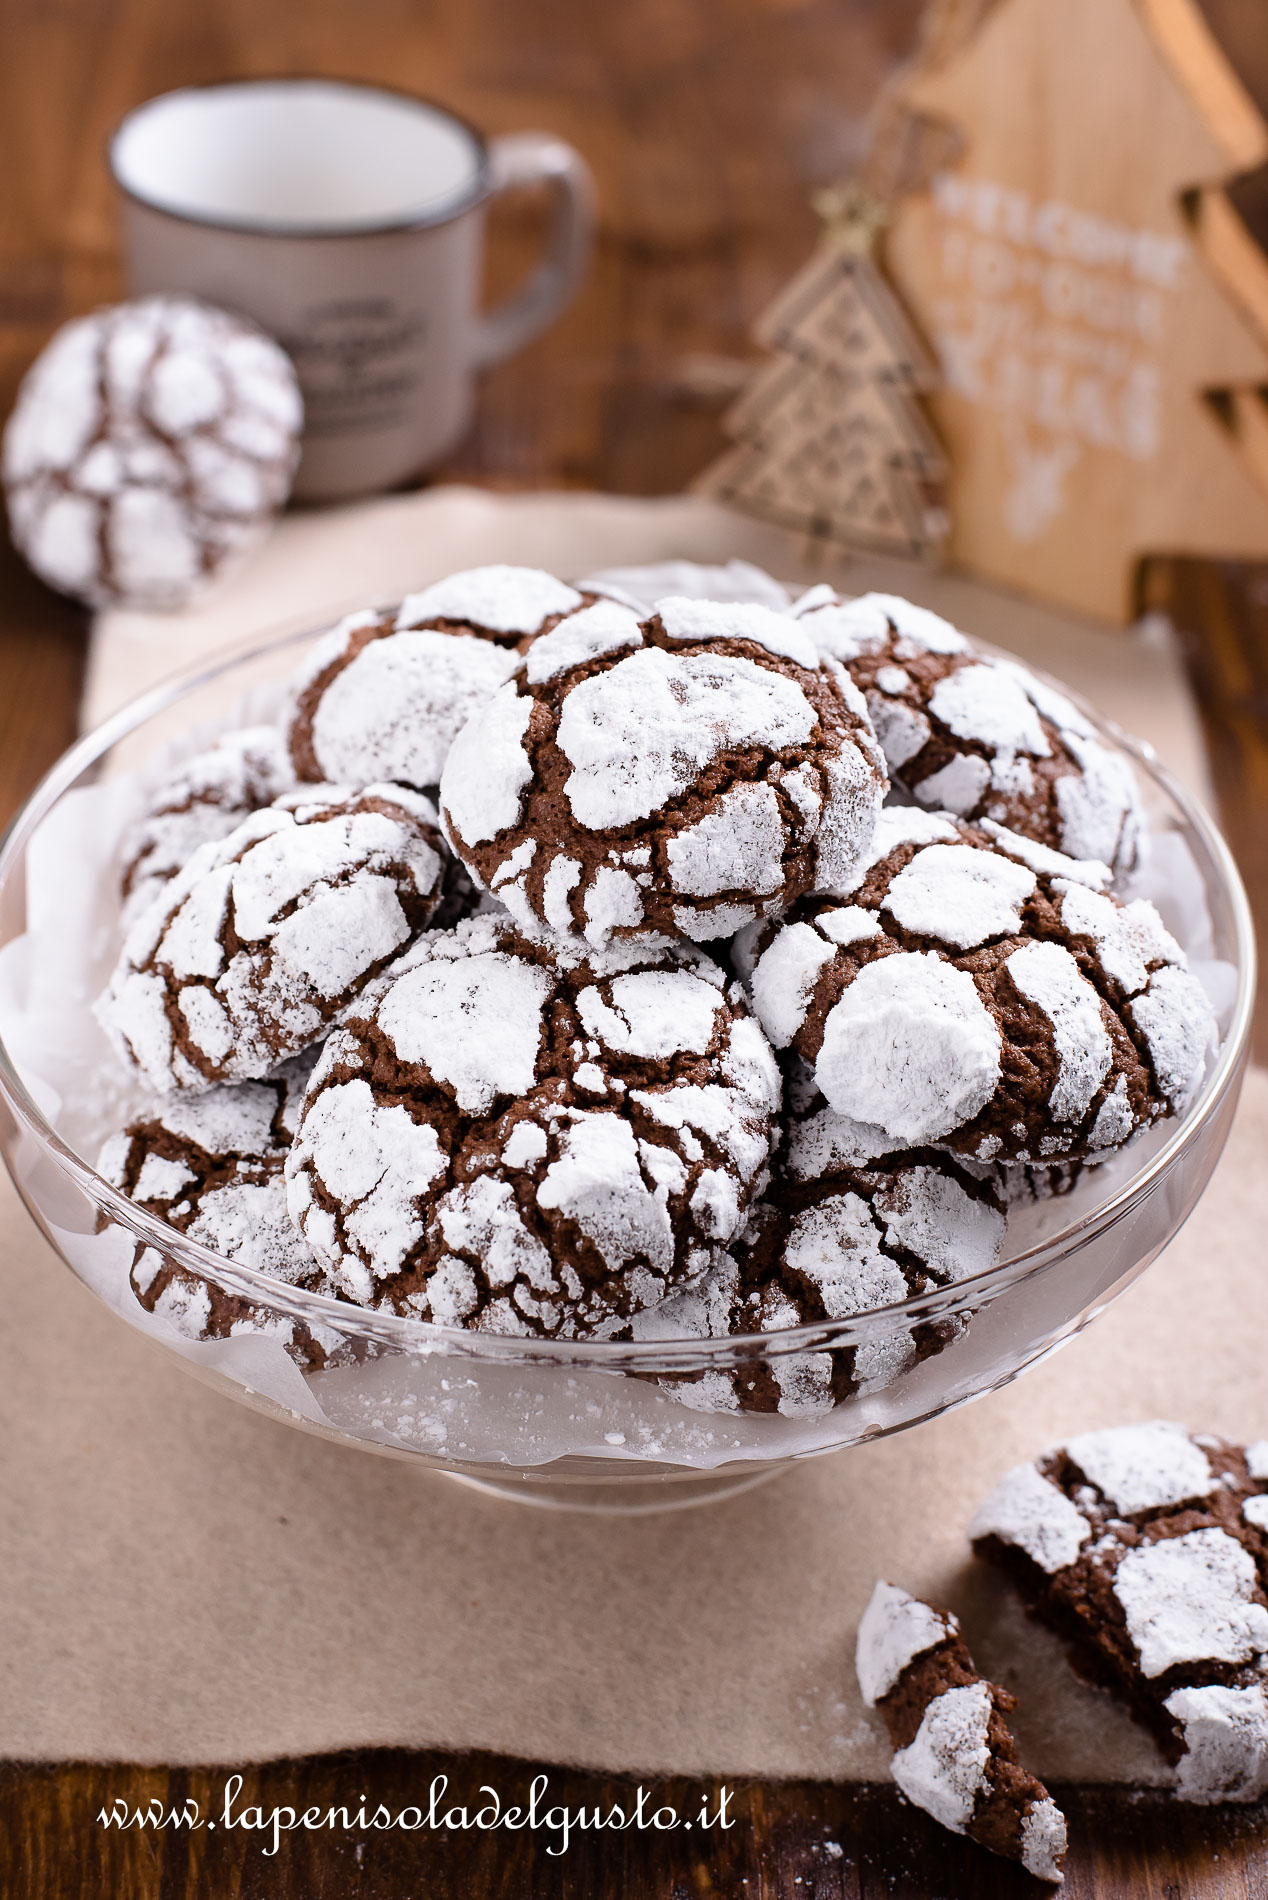 biscotti morbidi al cioccolato con le crepe in superficie la ricetta buonissima per Natale da regalare per l'avvento